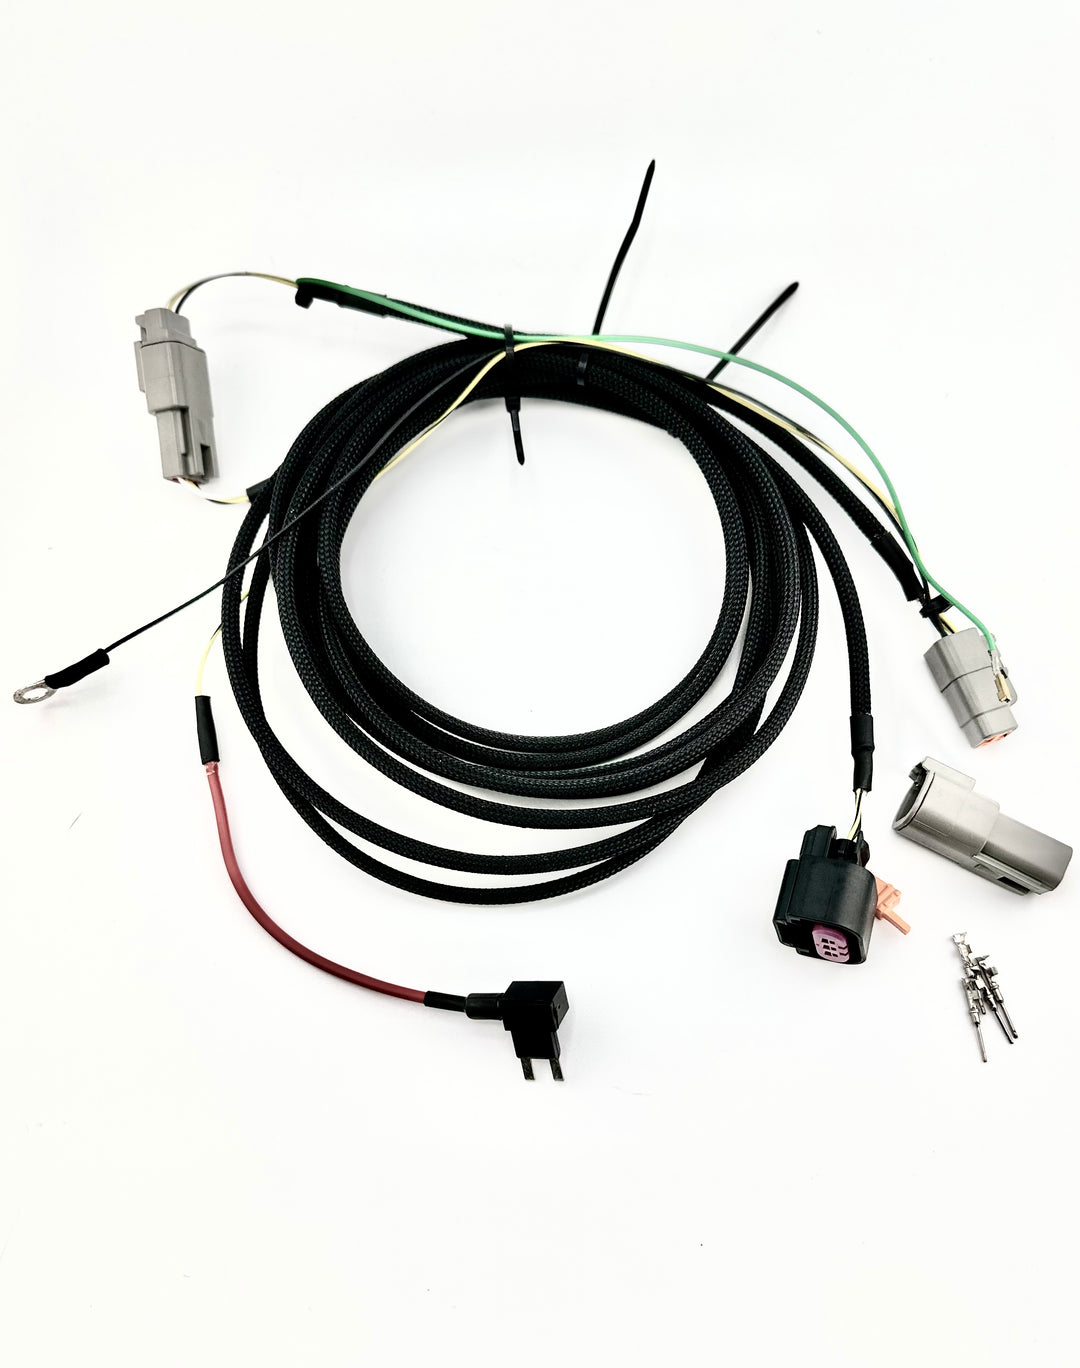 E85 Flex Fuel Kit for 8th Gen Honda Civic - Plug n' Play - zoshmfg